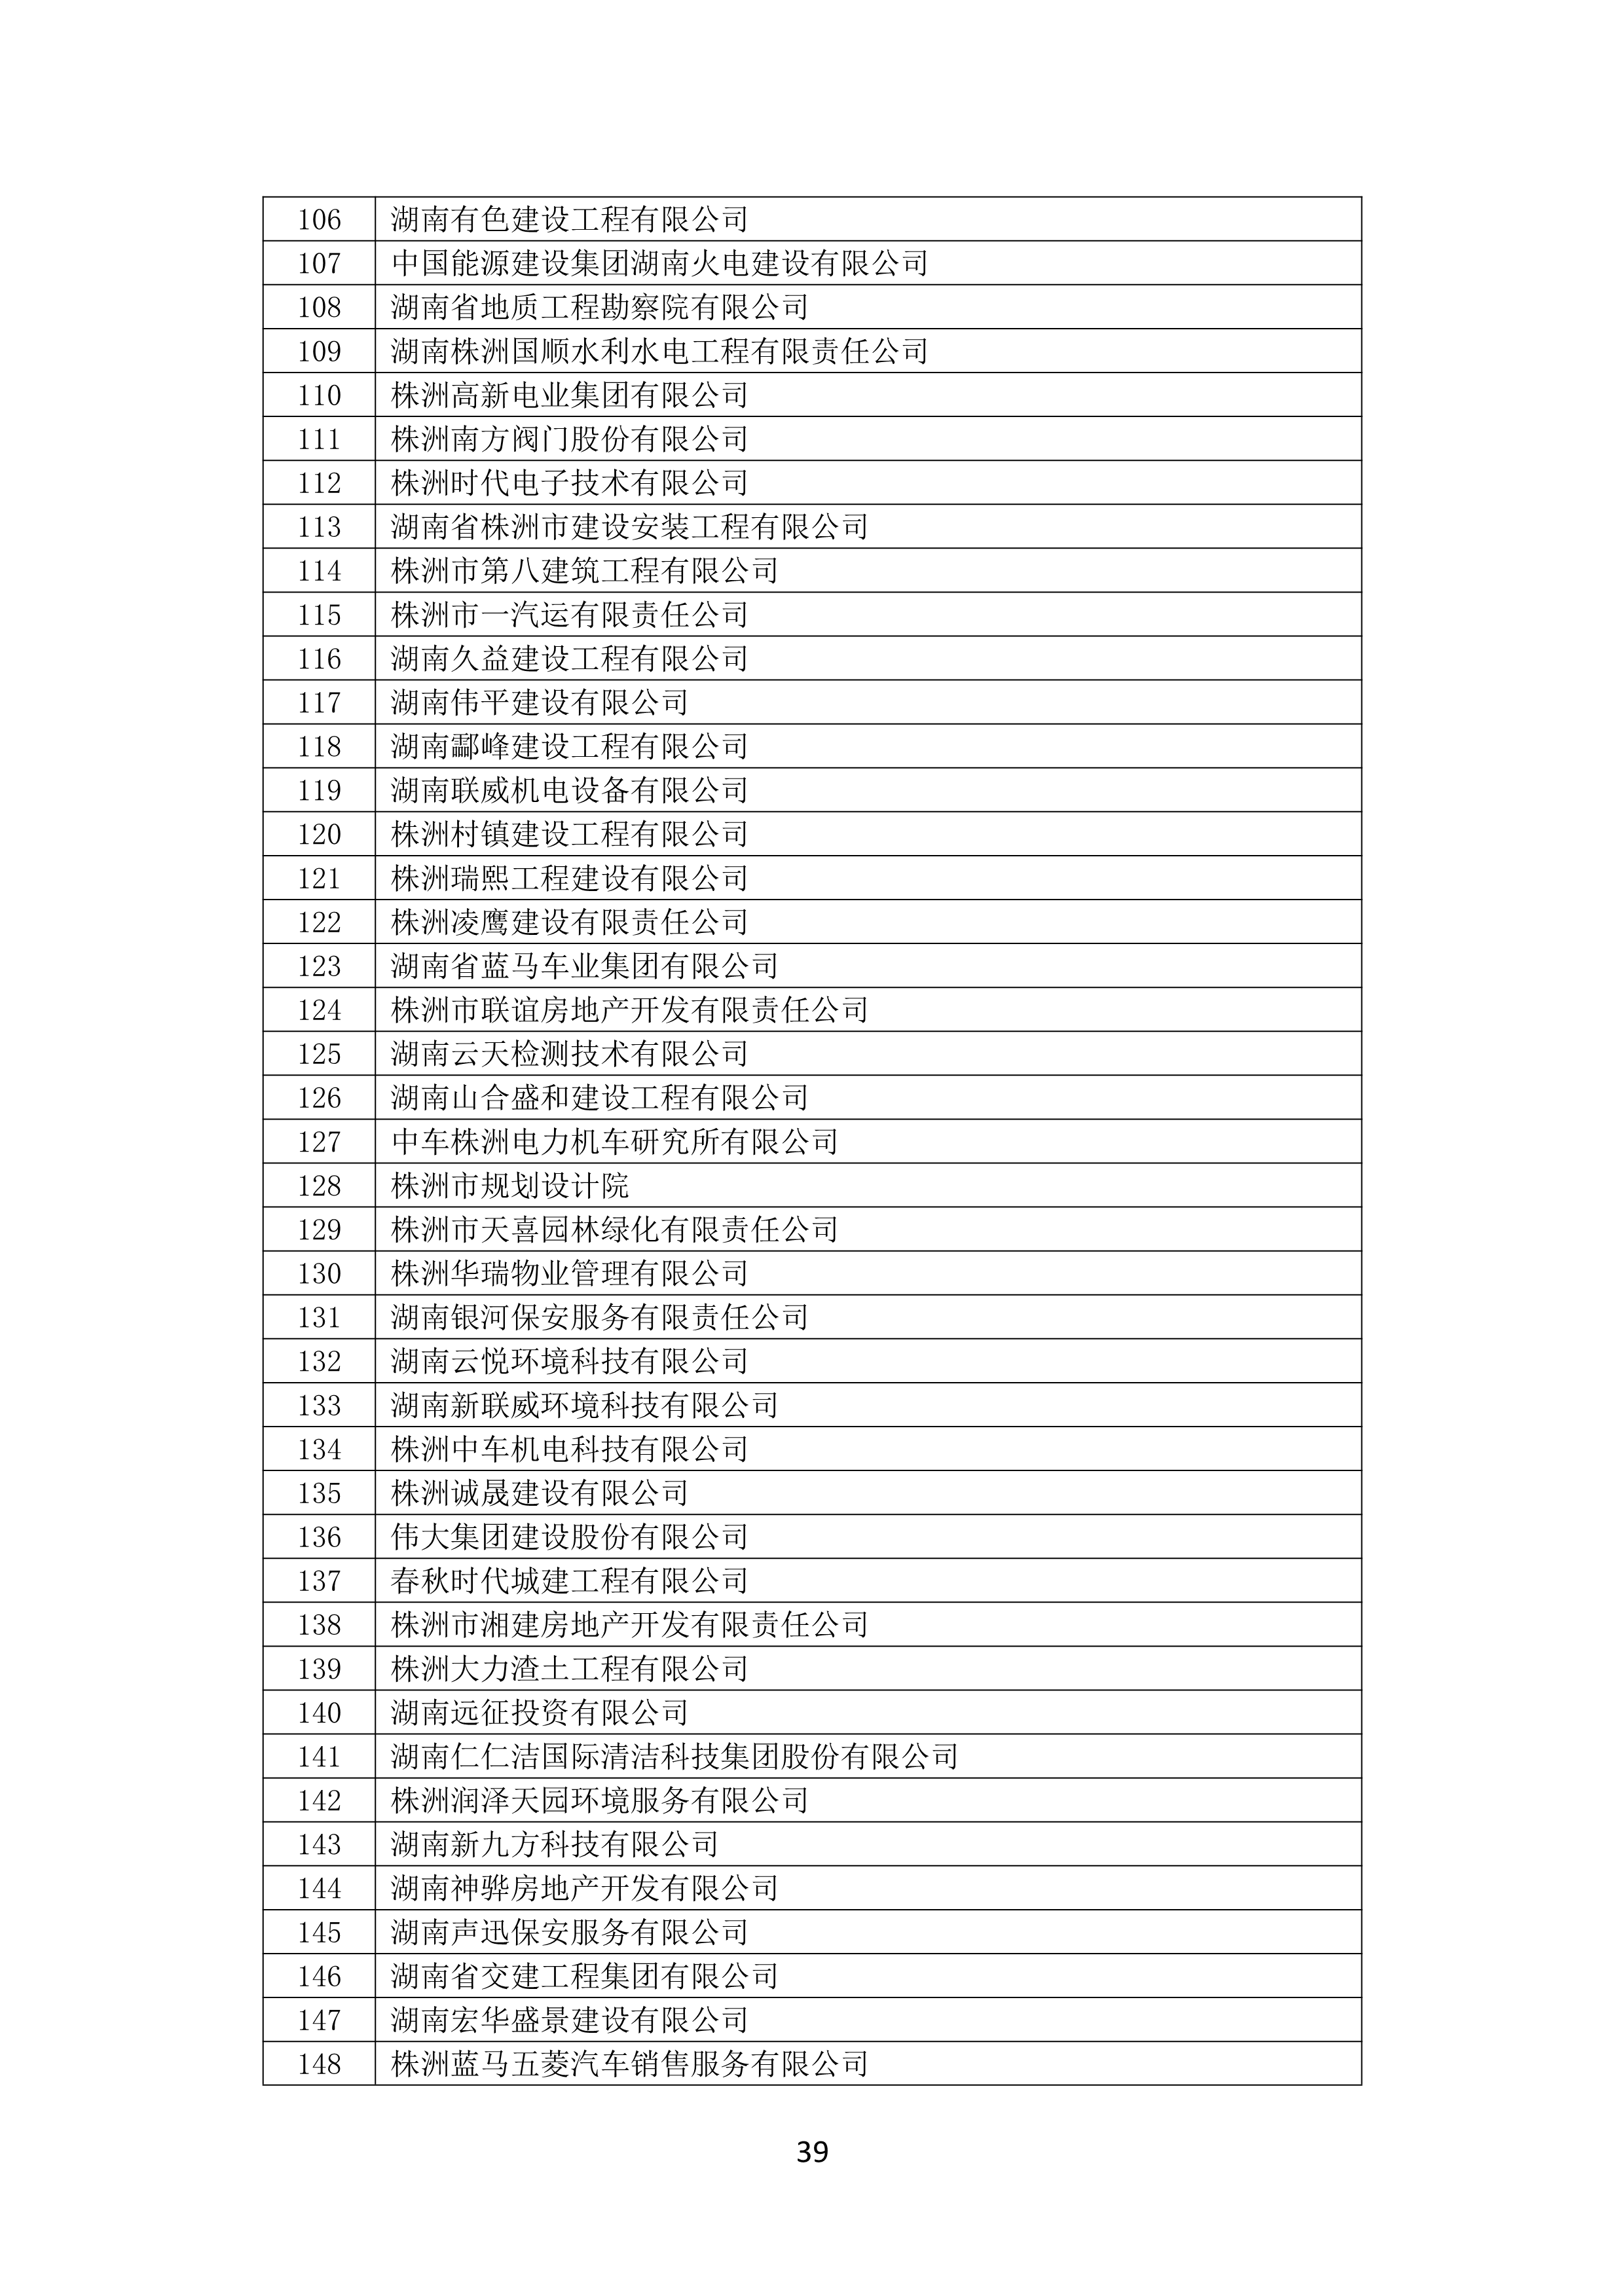 2021 年(nián)度湖南省守合同重信用企業名單_40.png